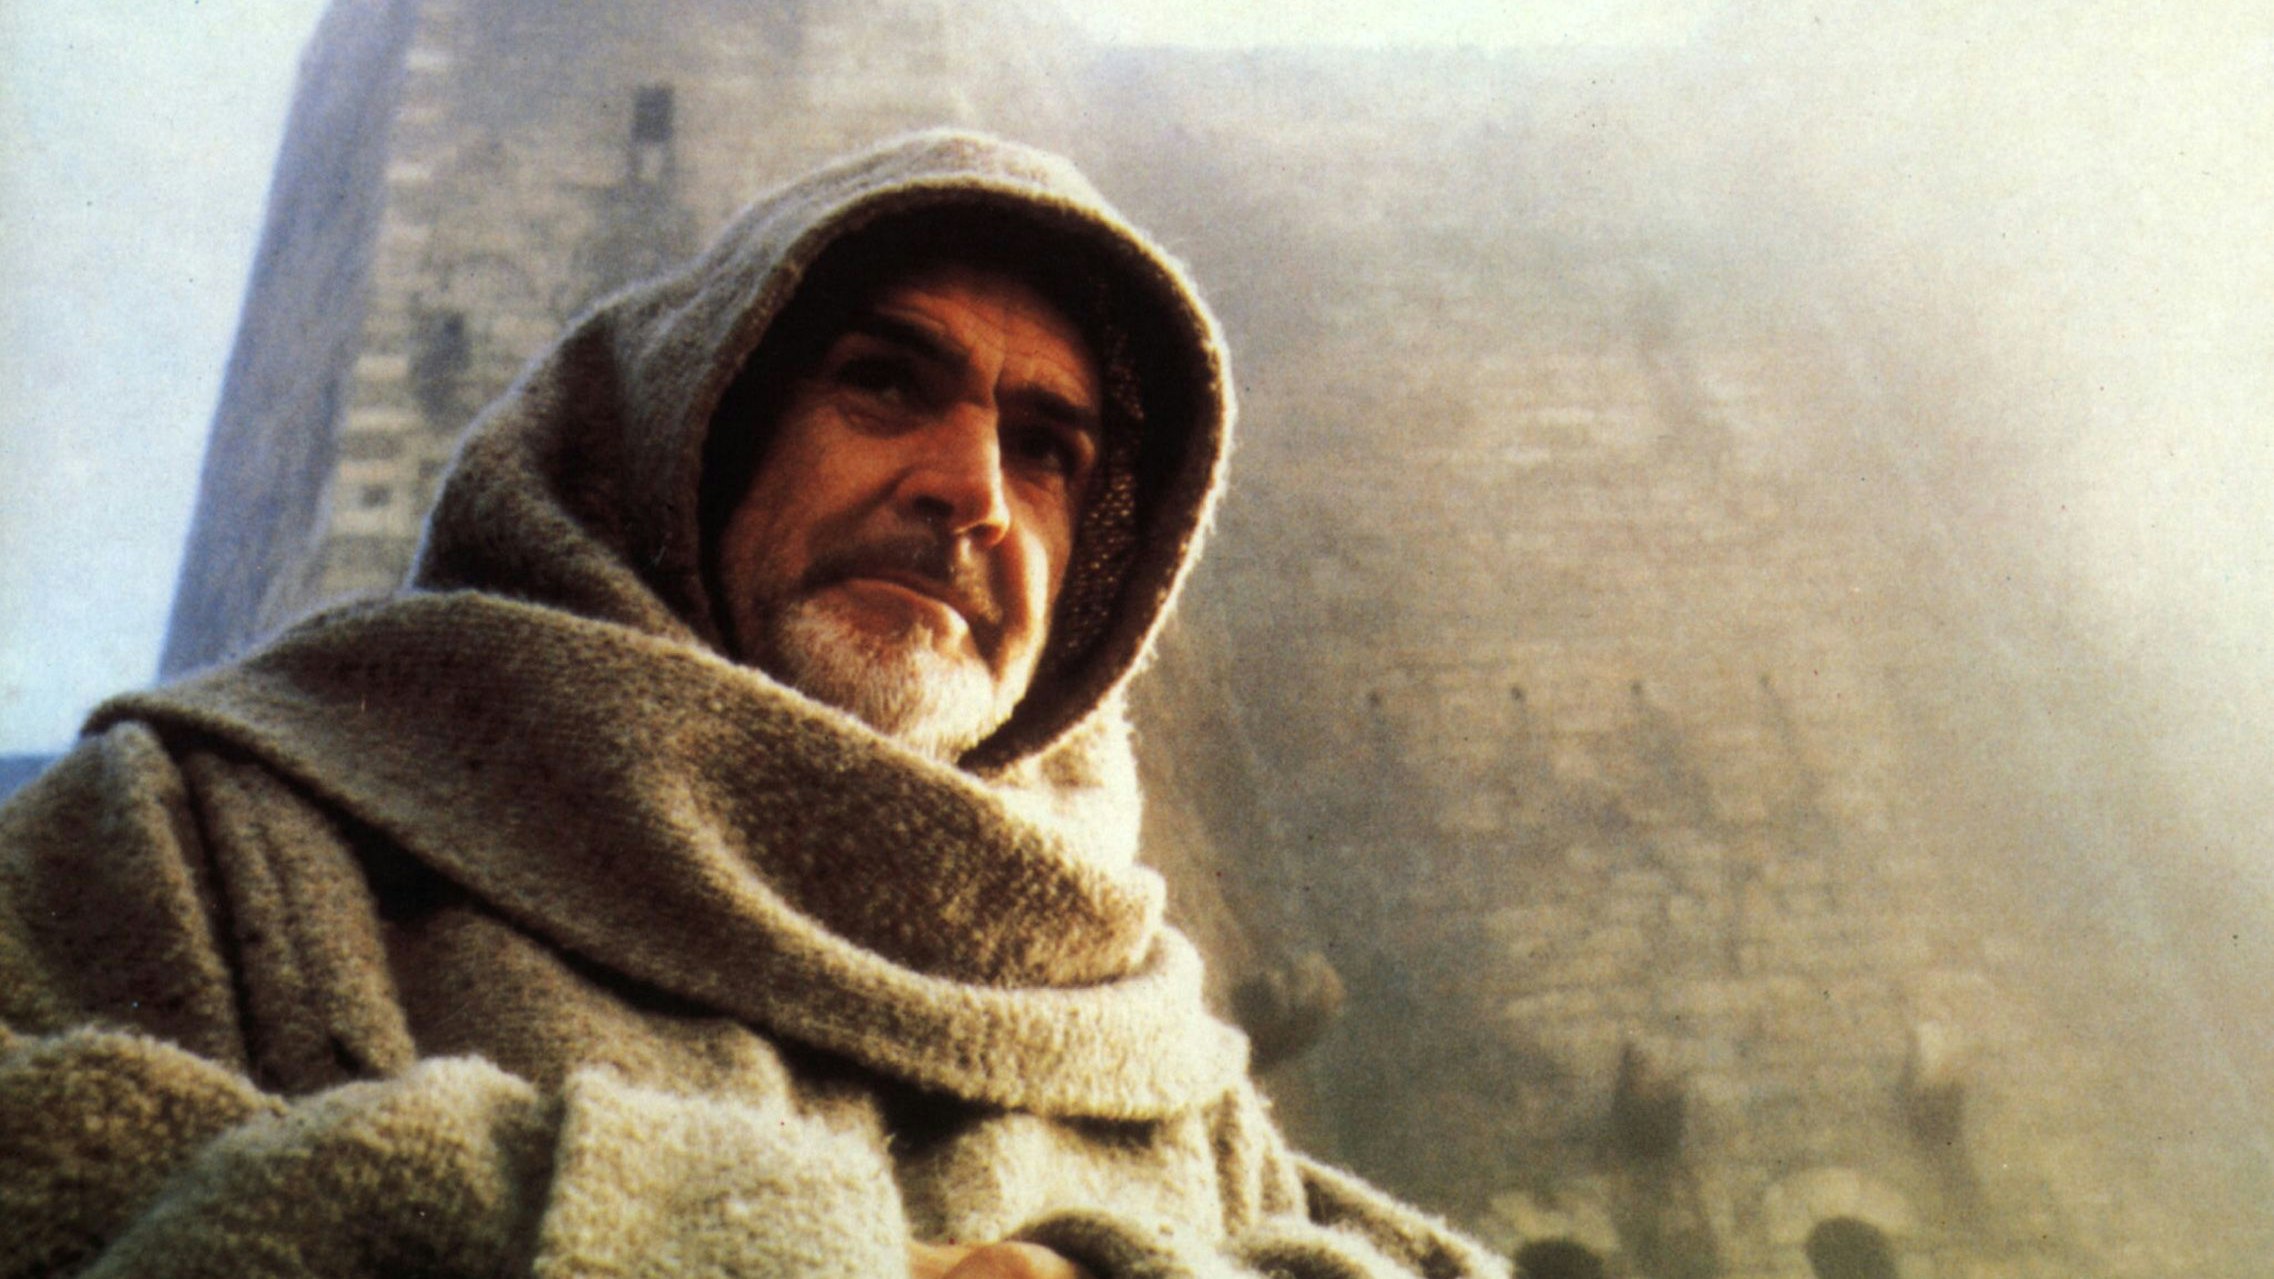 Sean Connery als Franziskanermönch William von Baskerville in der Verfilmung des Weltbestsellers "Der Name der Rose": Die Ausgangssituation der neuen Serie "Shardlake" erinnert stark an jene von Umberto Ecos Jahrhundert-Roman